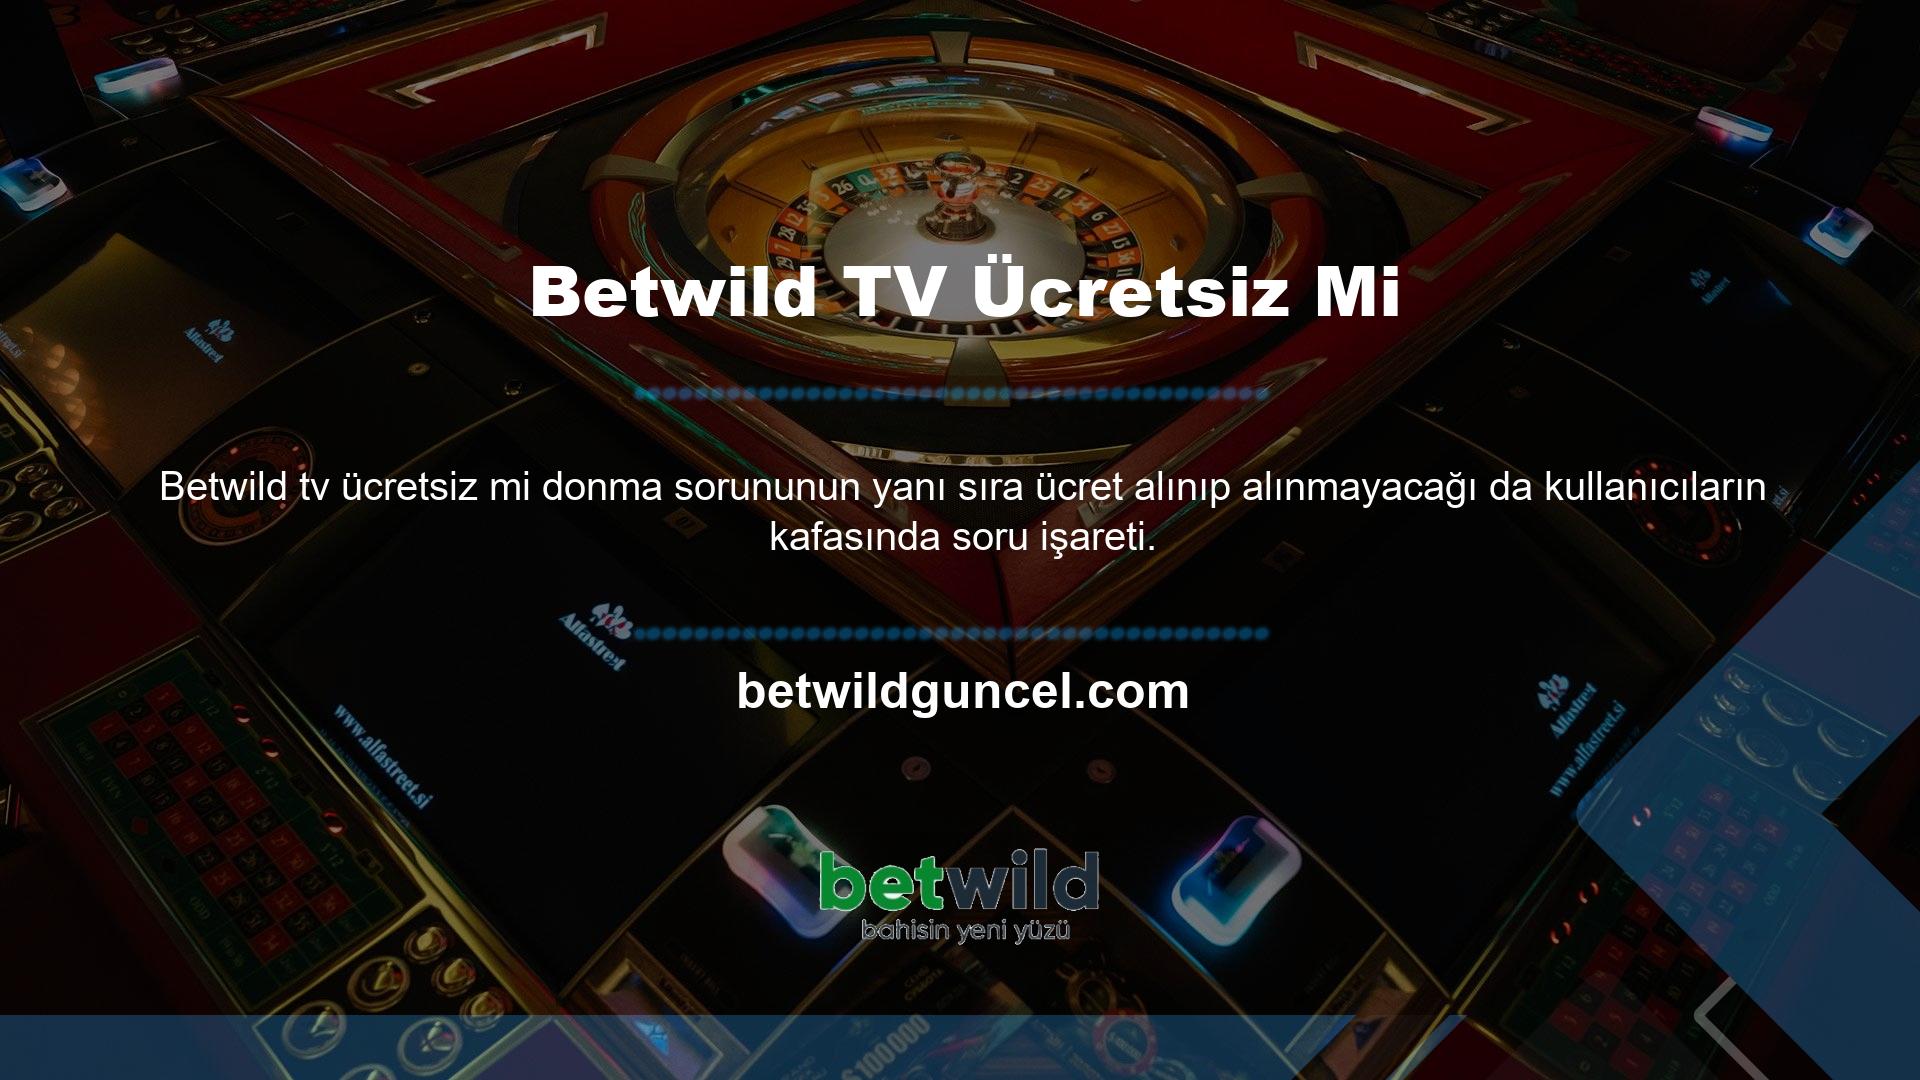 Bu arada casino tutkunlarının her zaman izlediği Betwild TV canlı yayınlarına ücret ödemeniz gerekiyor mu? Soruya bu şekilde cevap vermeyi daha mantıklı düşünebilirsiniz